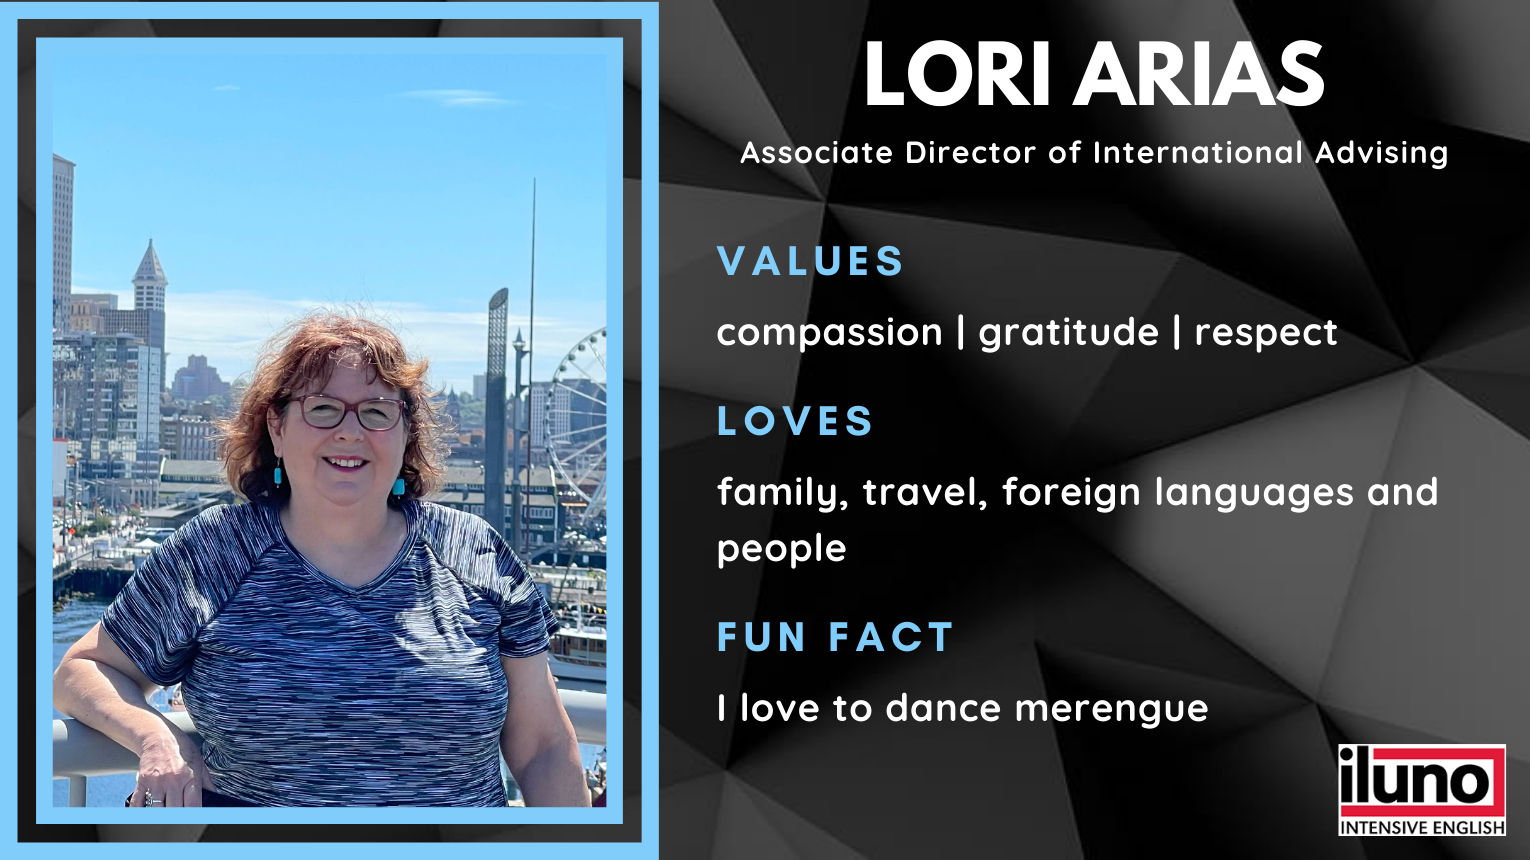 Lori Arias ILUNO Biography